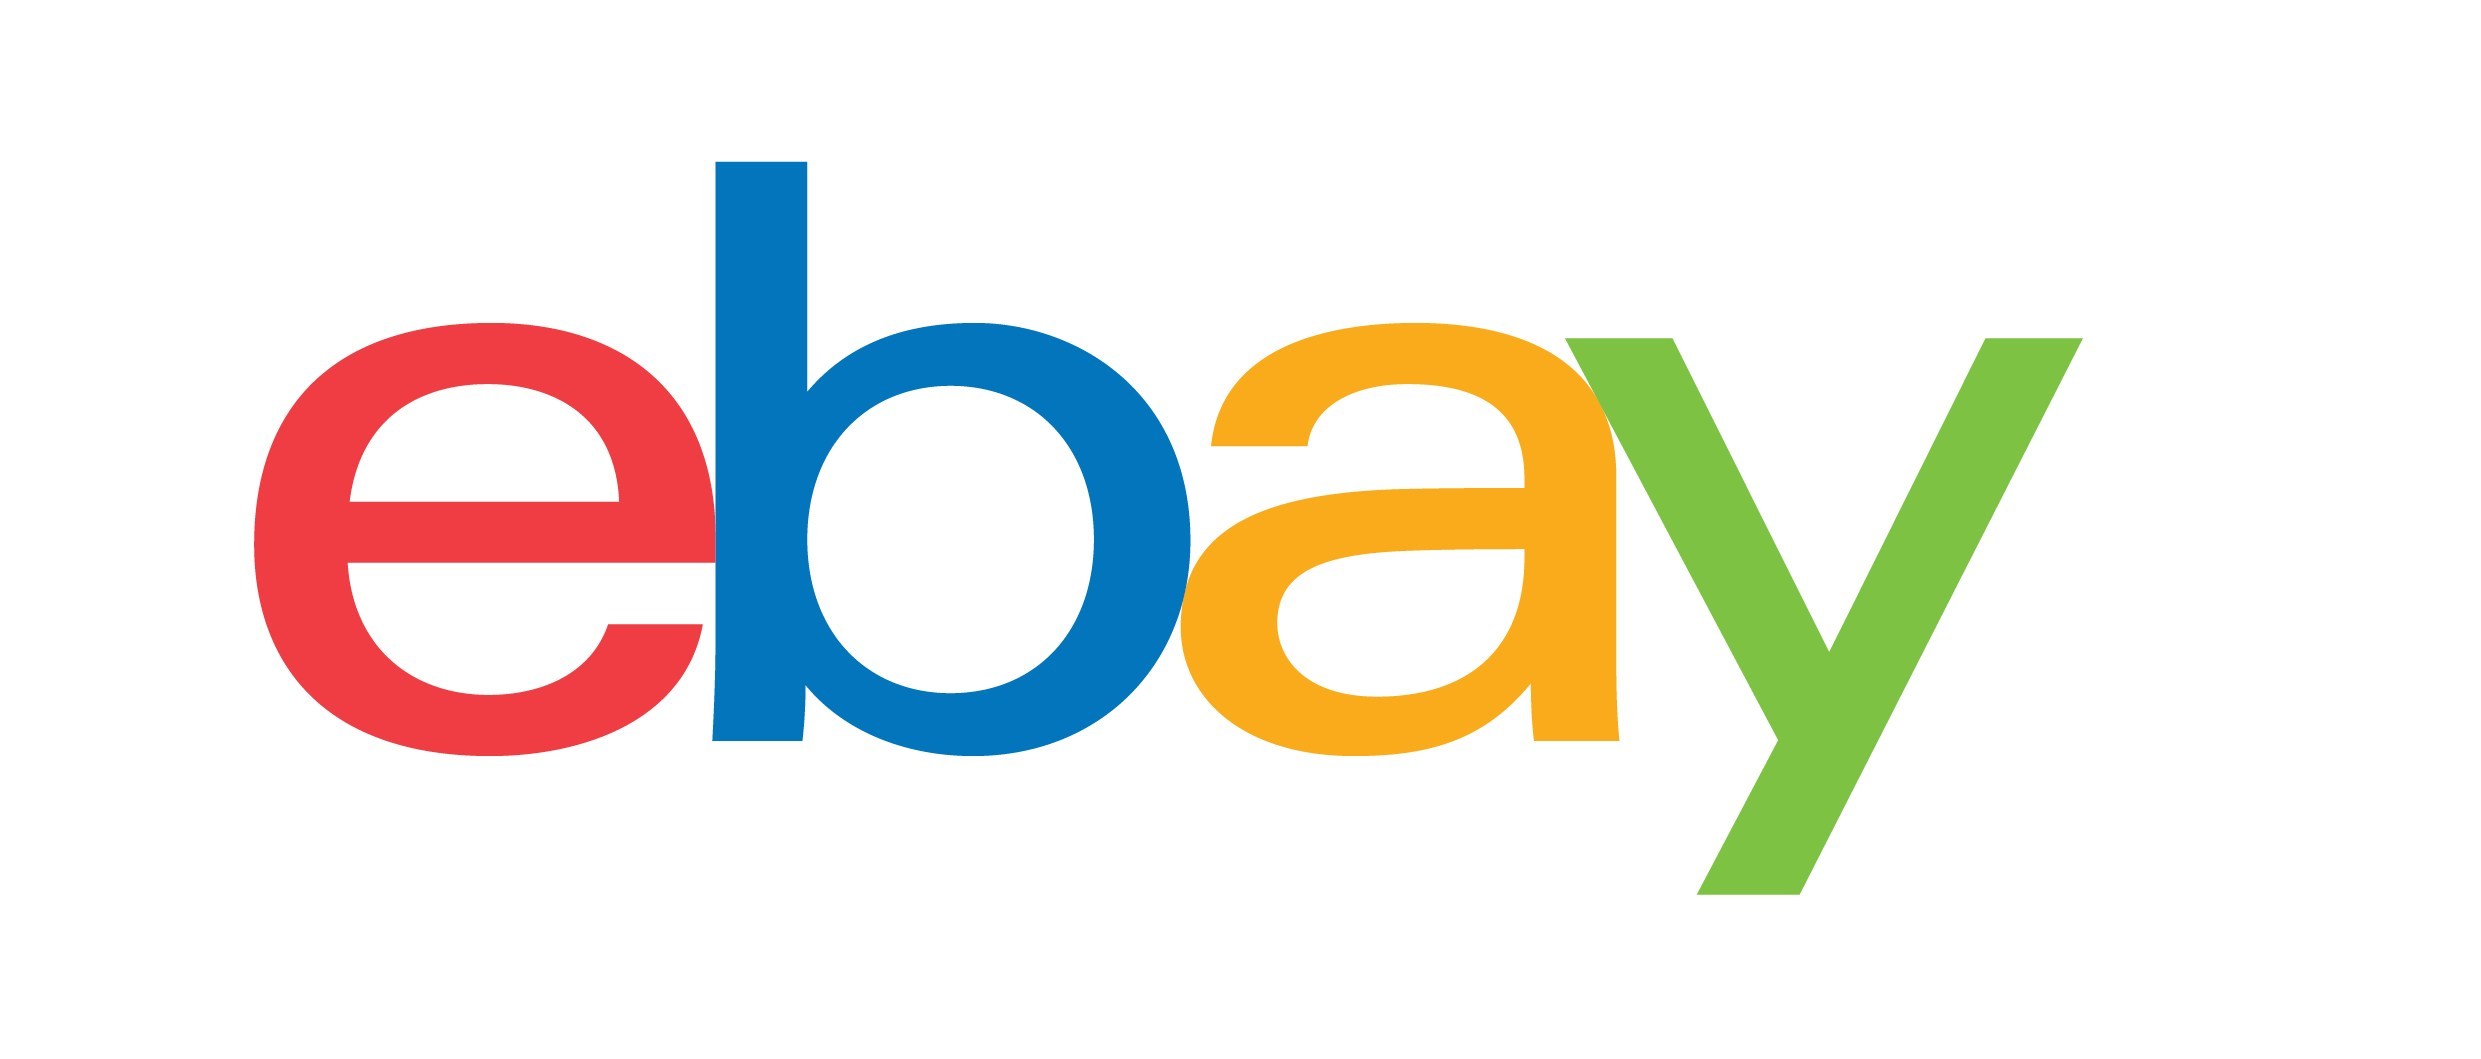 Ebay là gì? Cách bán hàng trên Ebay.com